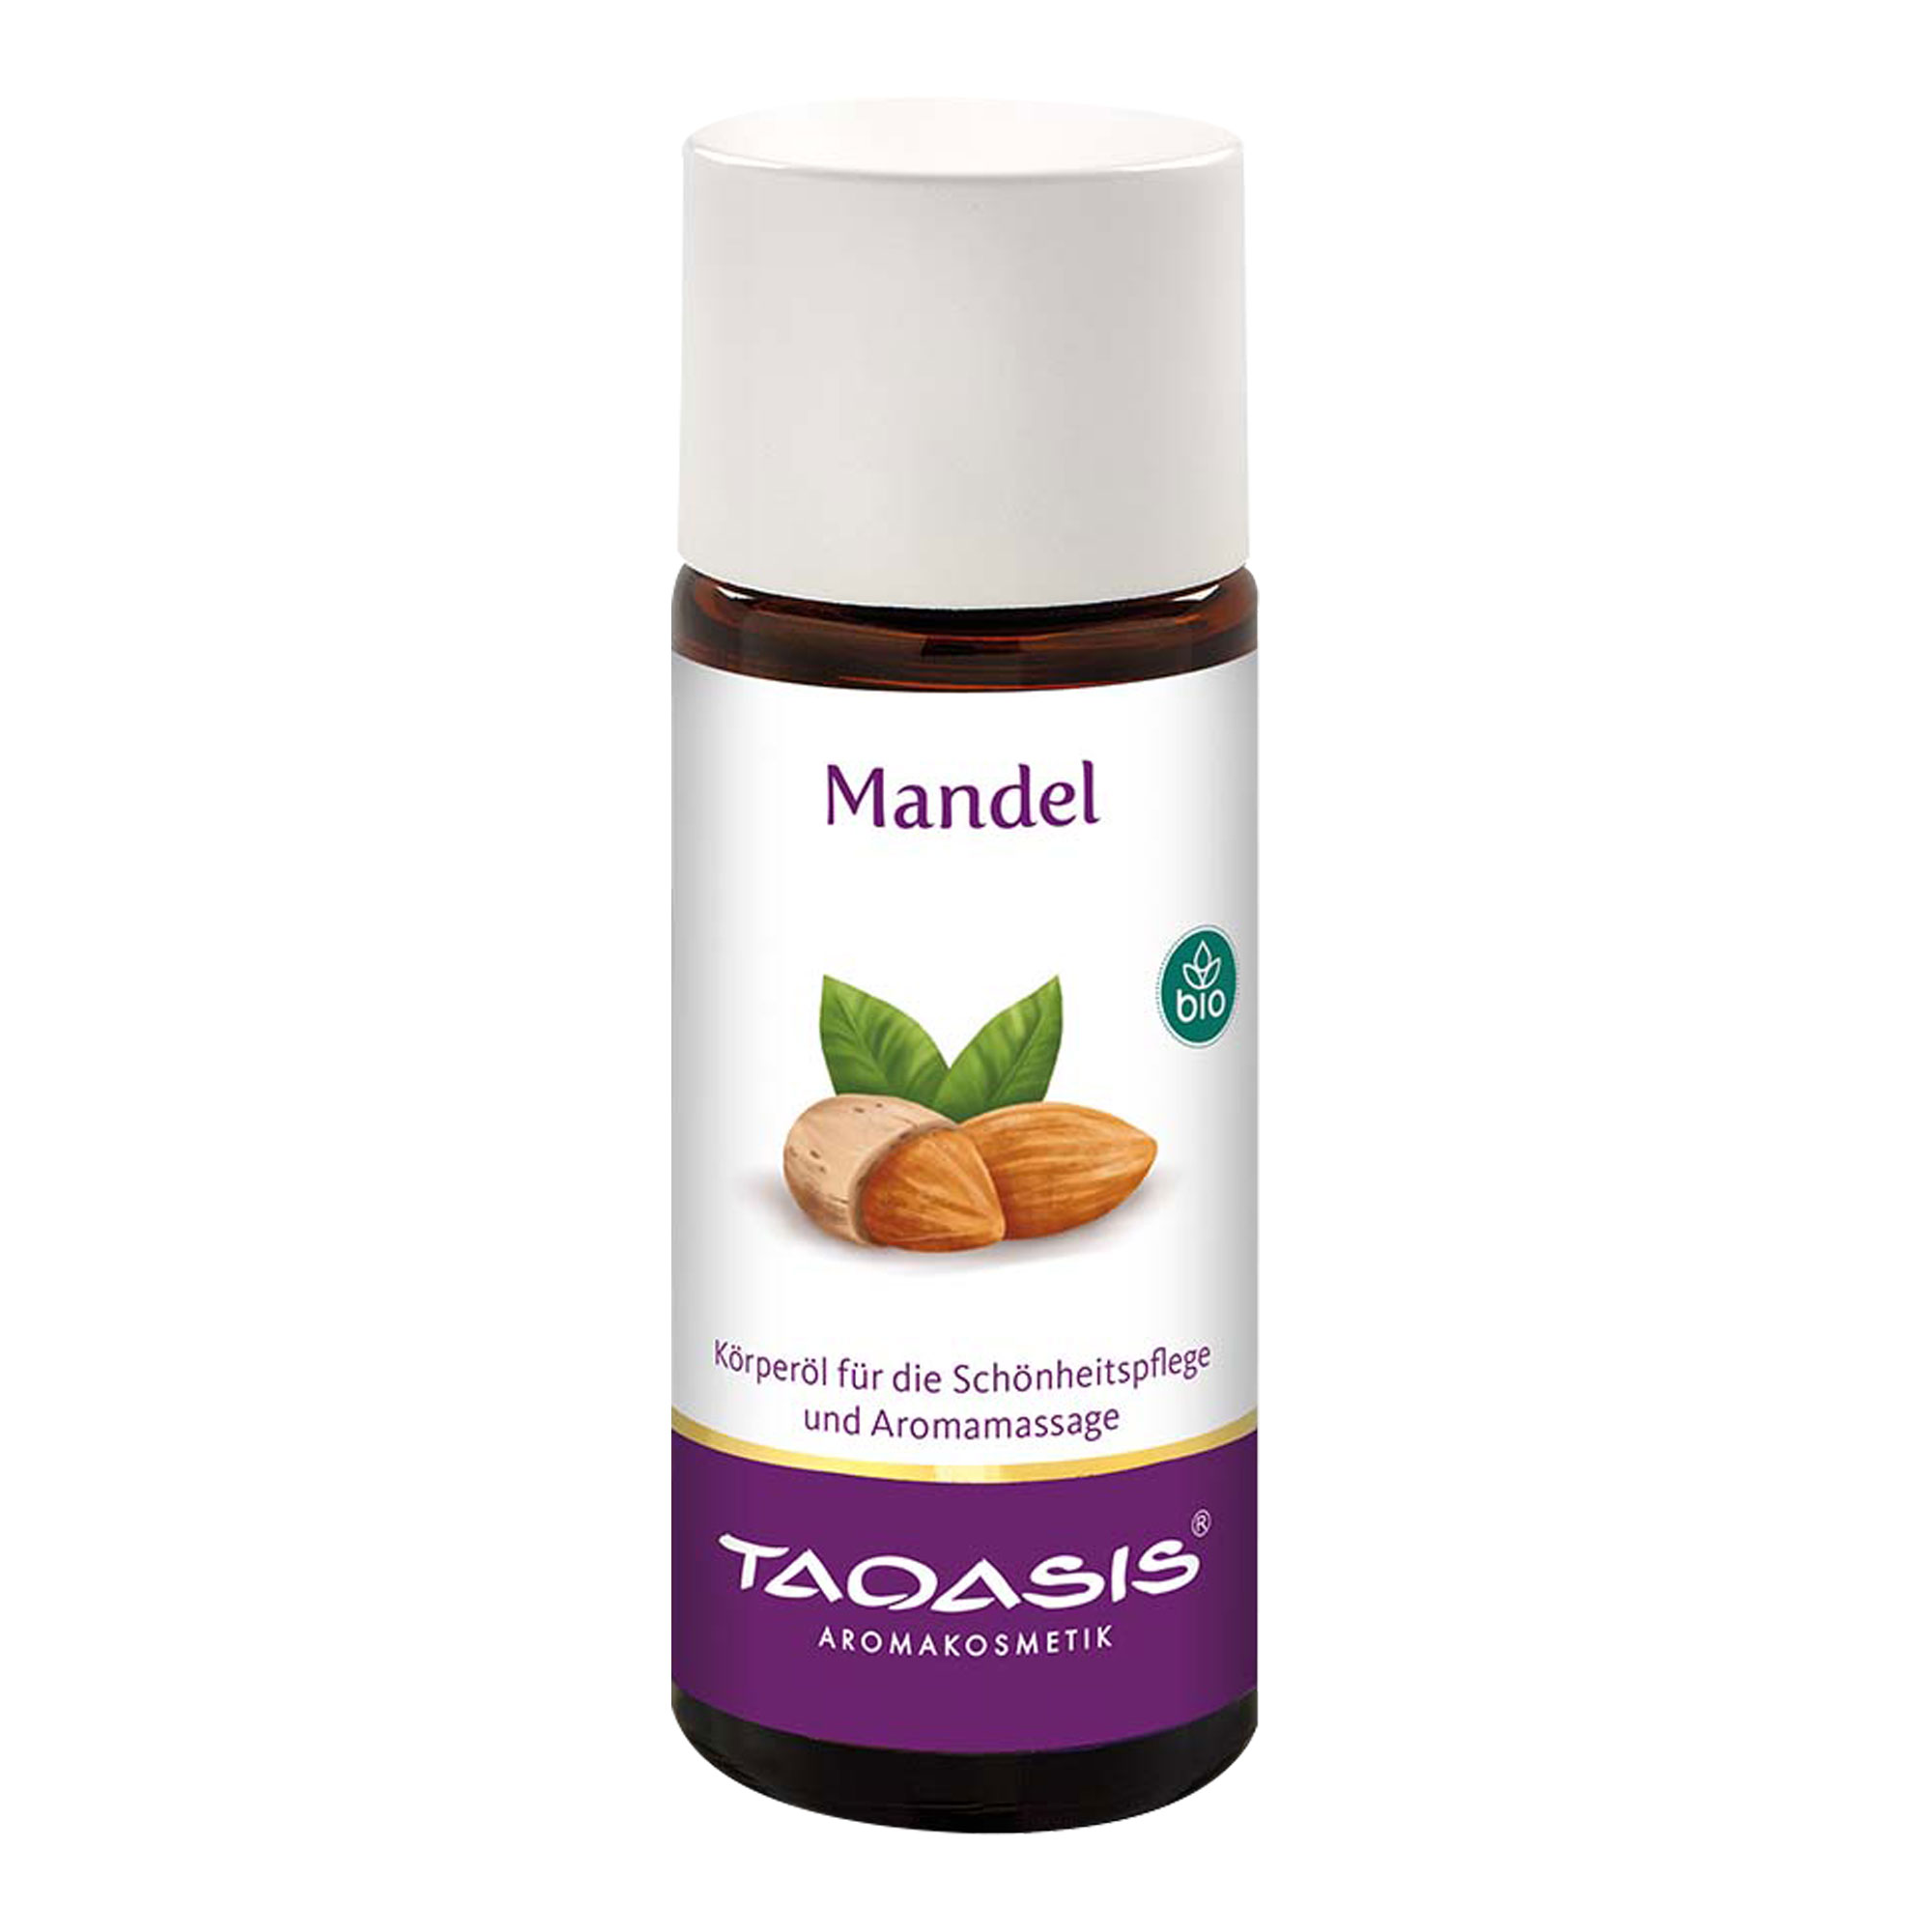 Mild duftendes Öl für die sanfte Körperpflege und sinnliche Aroma-Massage.